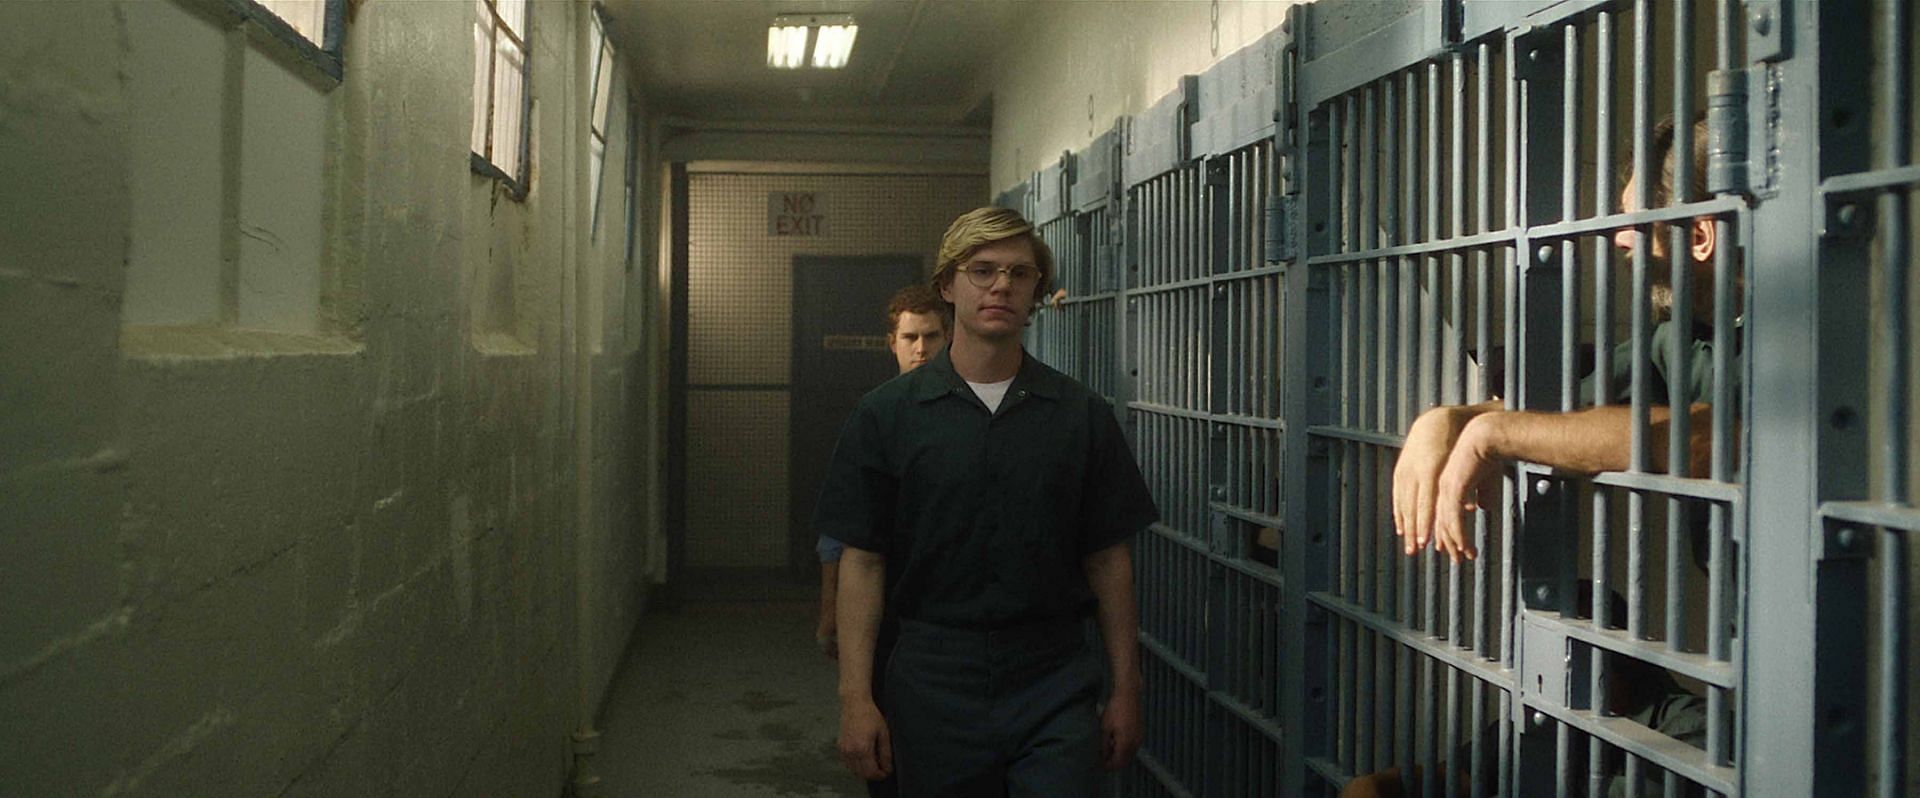 Evan Peters as Jeffrey Dahmer in Dahmer - Monster: The Jeffrey Dahmer Story (Image via IMDb)